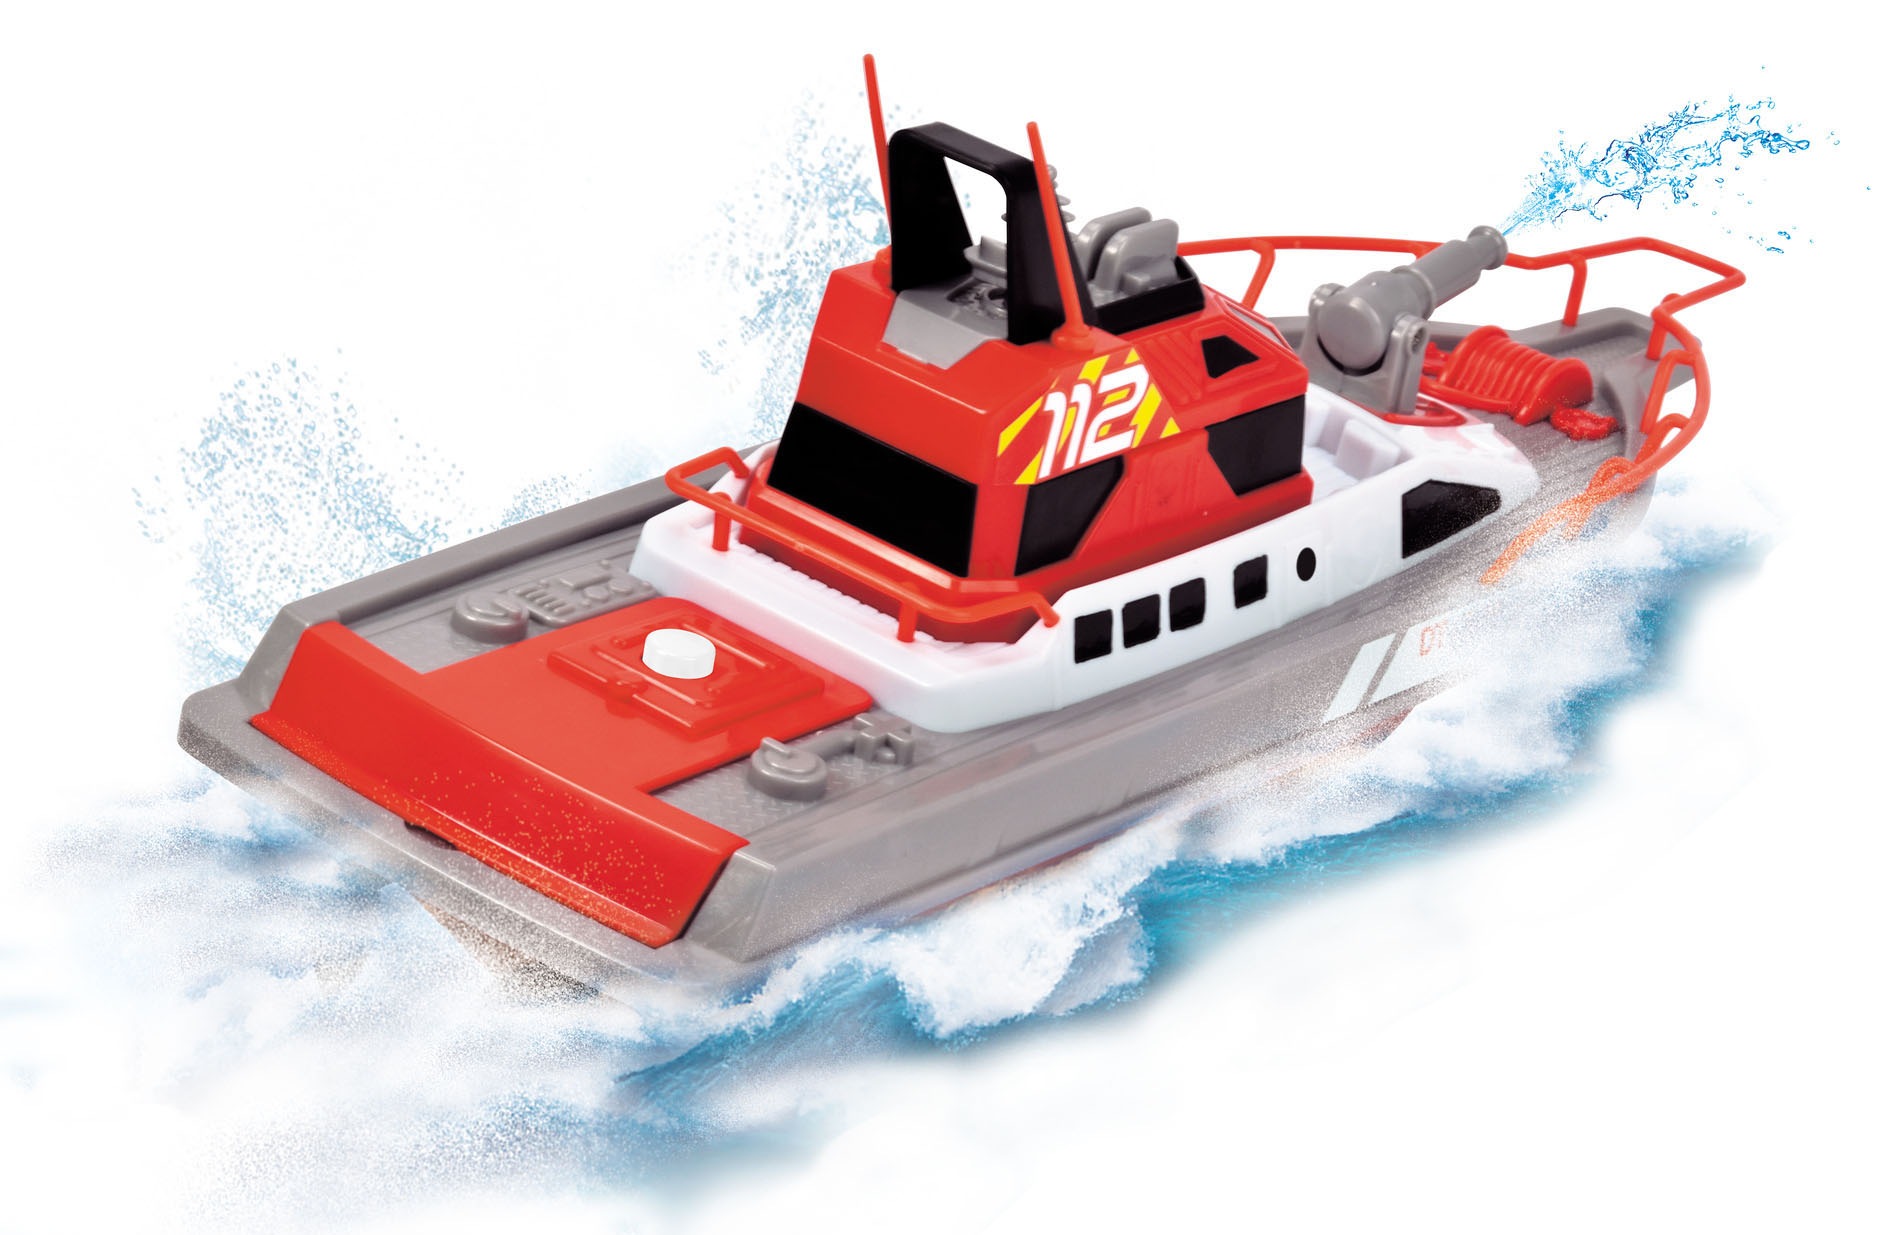 Dickie Toys RC-Boot »Feuerwehrboot«, mit Wasserspritzfunktion und Fernbedienung